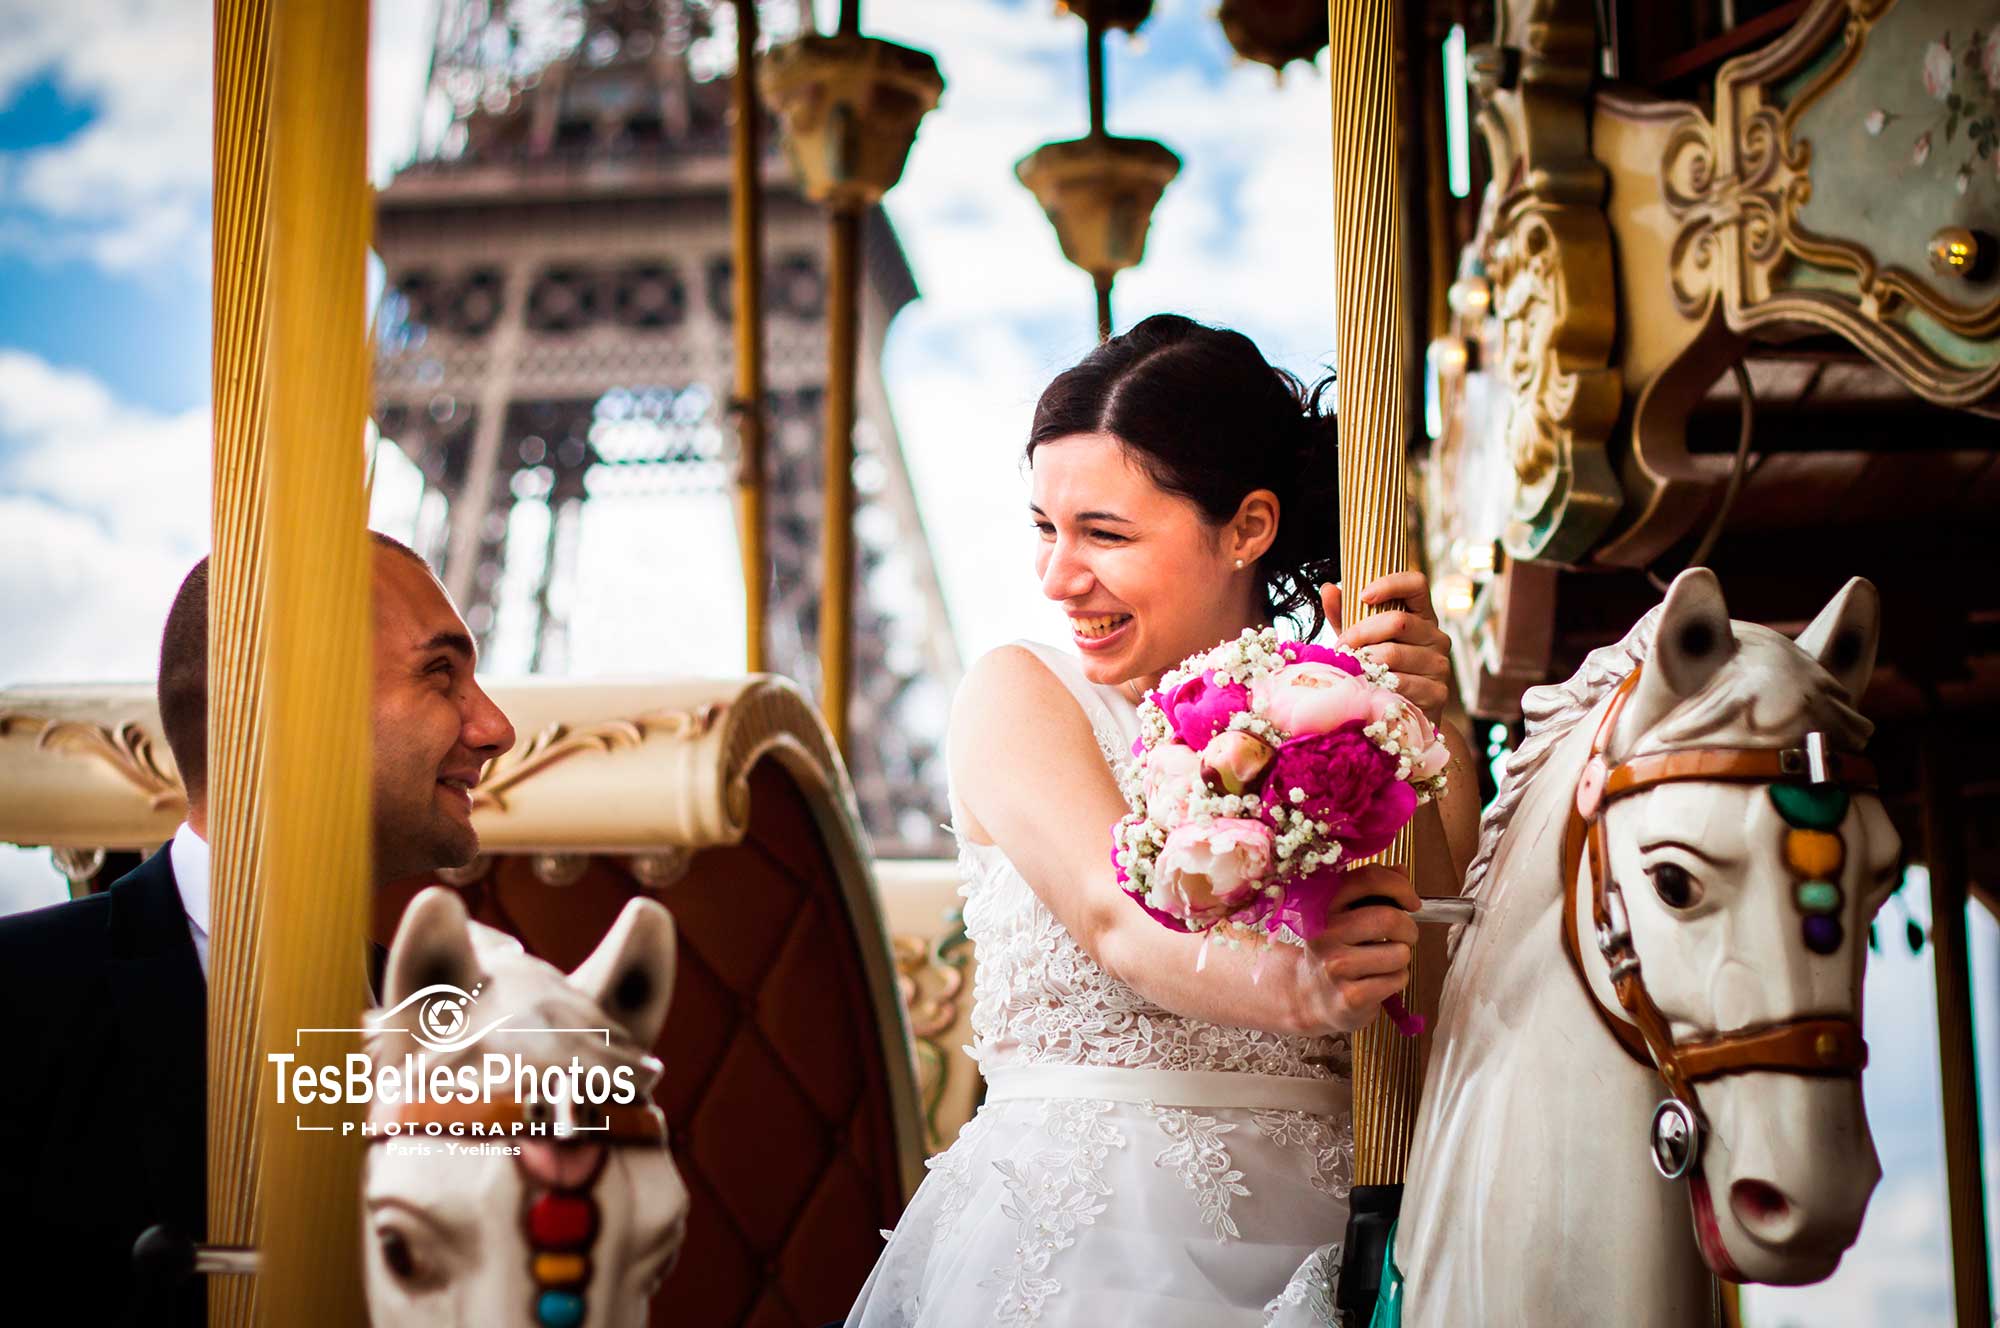 Photographe Paris pour mariage, baptême, anniversaire et entreprise